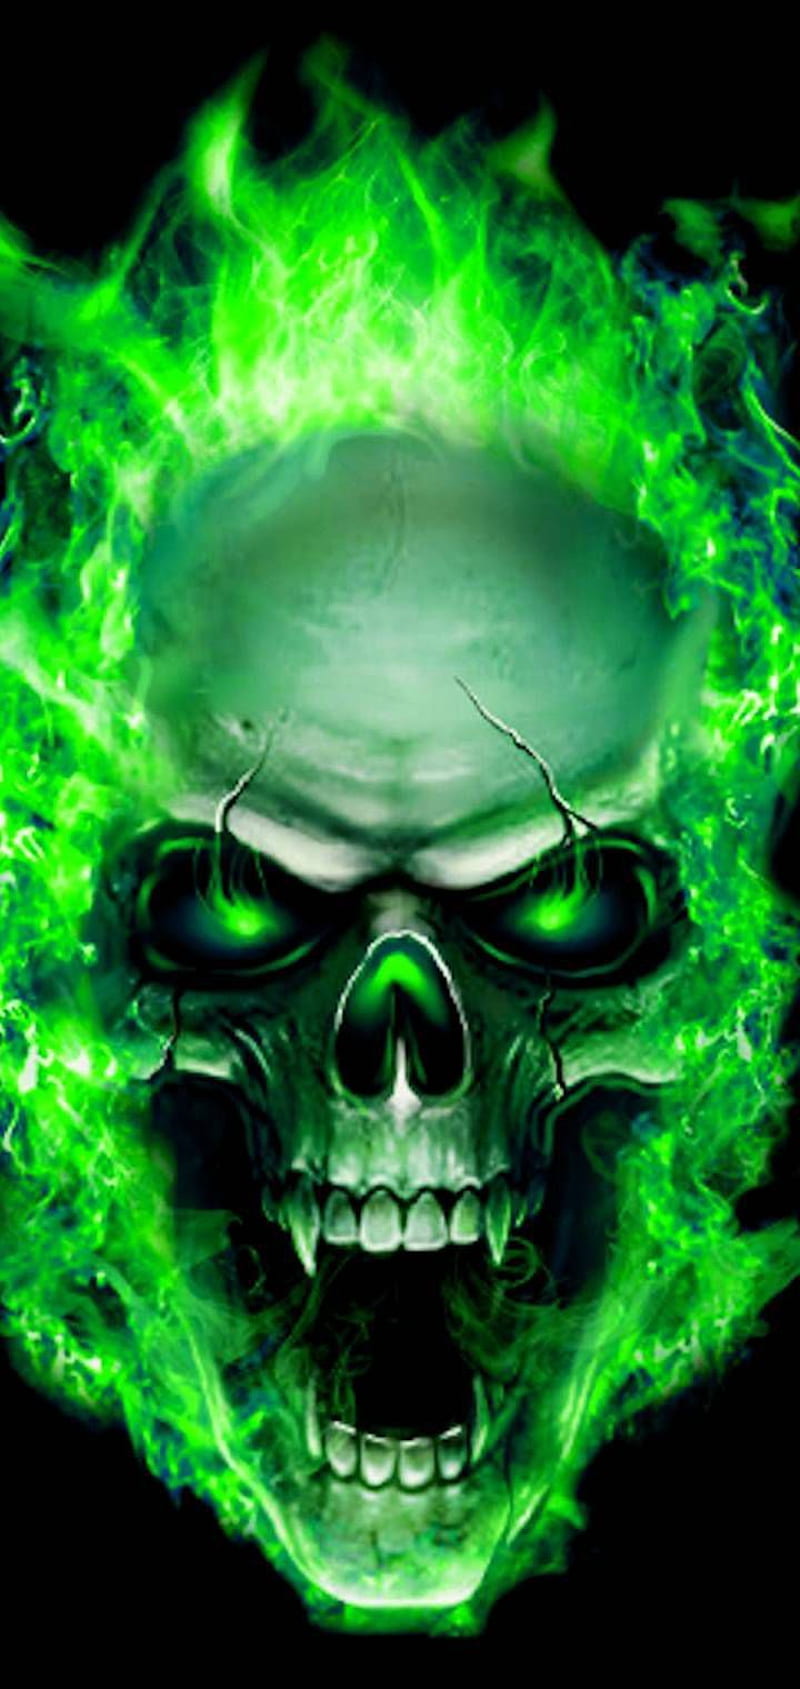 Ronaldo kancev on Кaлоян.к. Skull , Skull artwork, Skull, Ghost Rider Skull, HD phone wallpaper